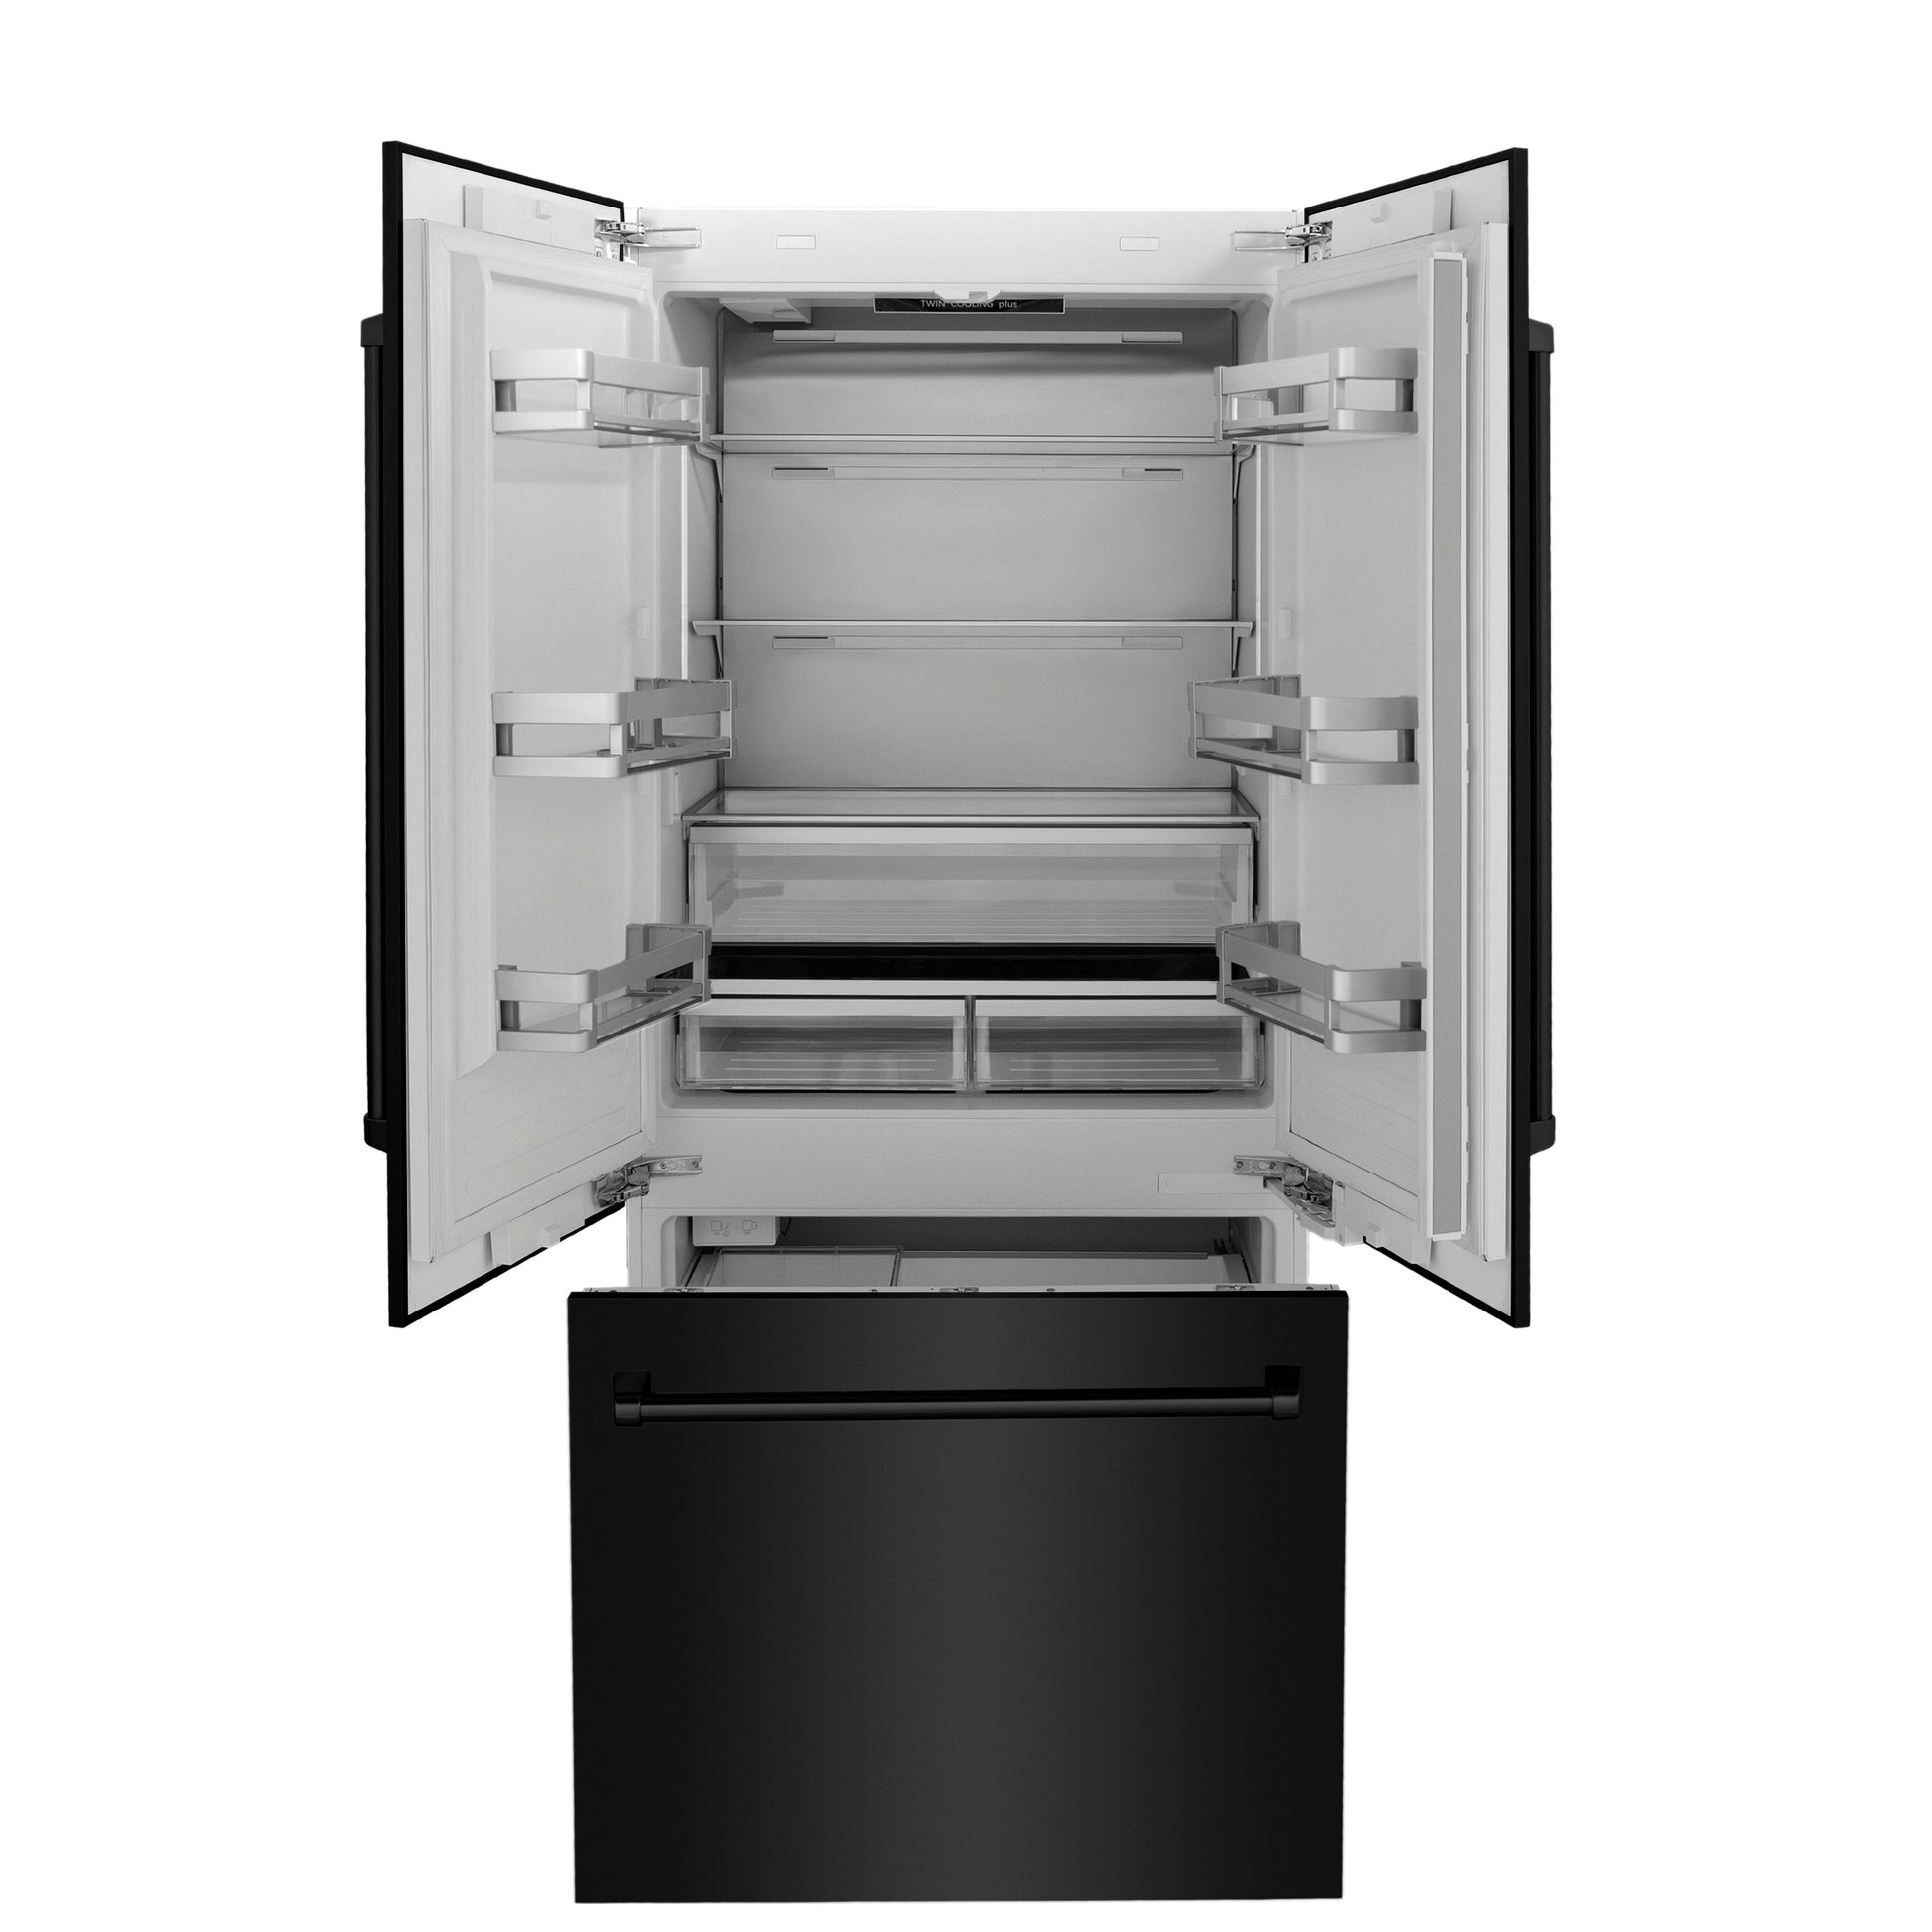 ZLINE 36" Built-In 3-Door French Door Refrigerator with Internal Water and Ice Dispenser - Black Stainless Steel